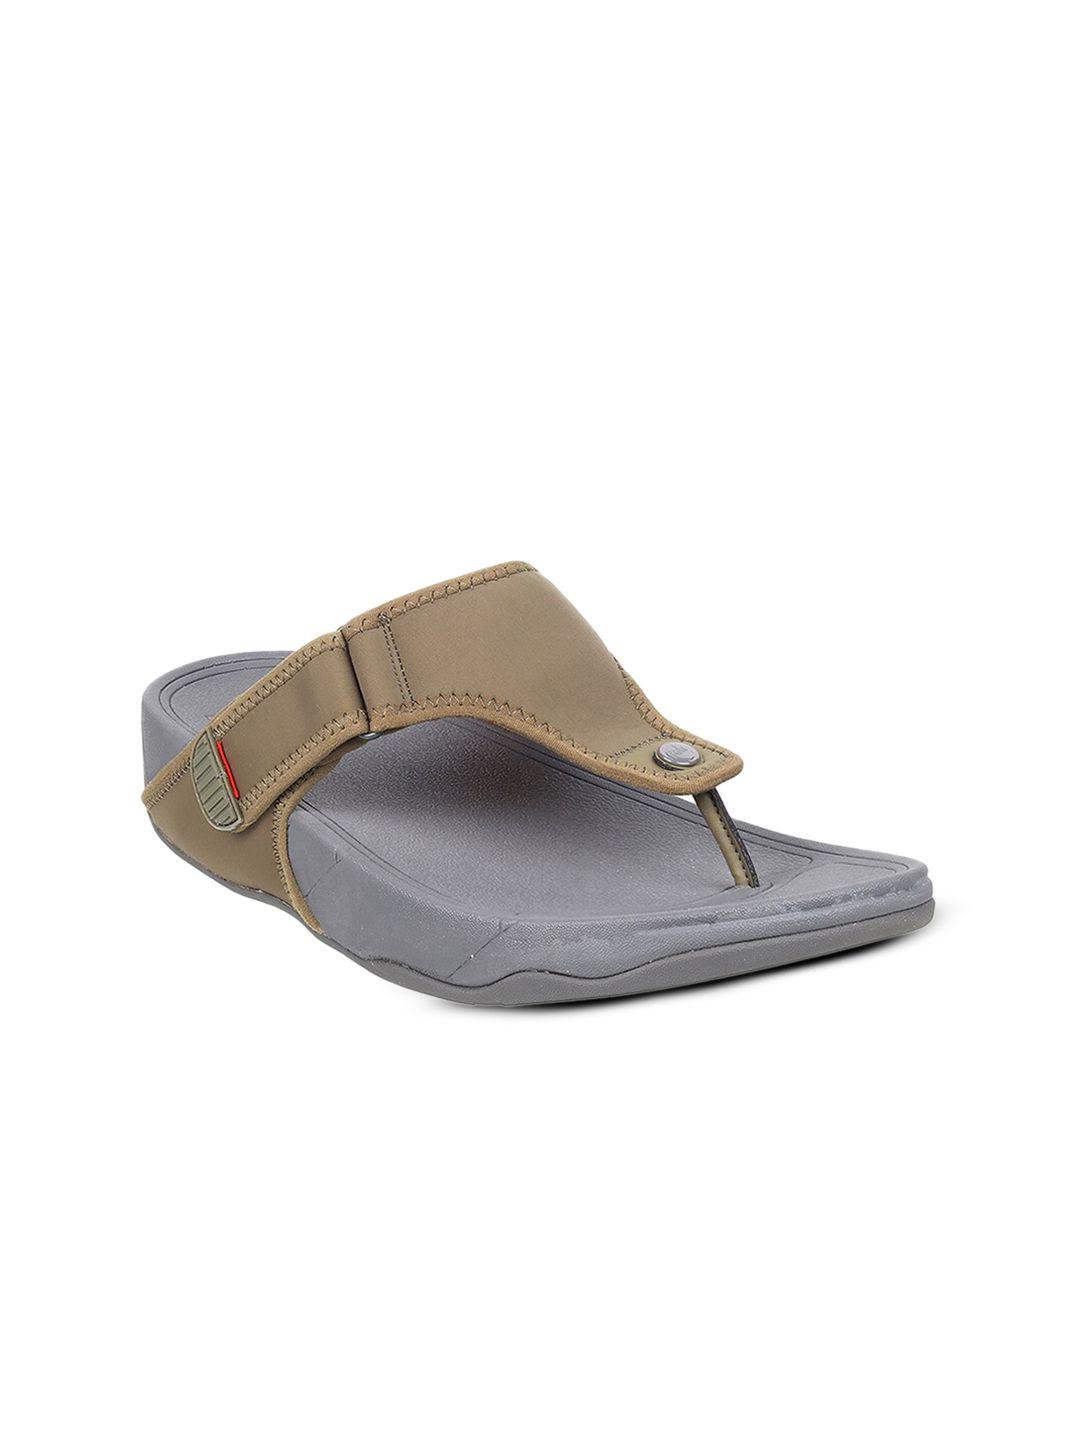 fitflop men open toe comfort sandals